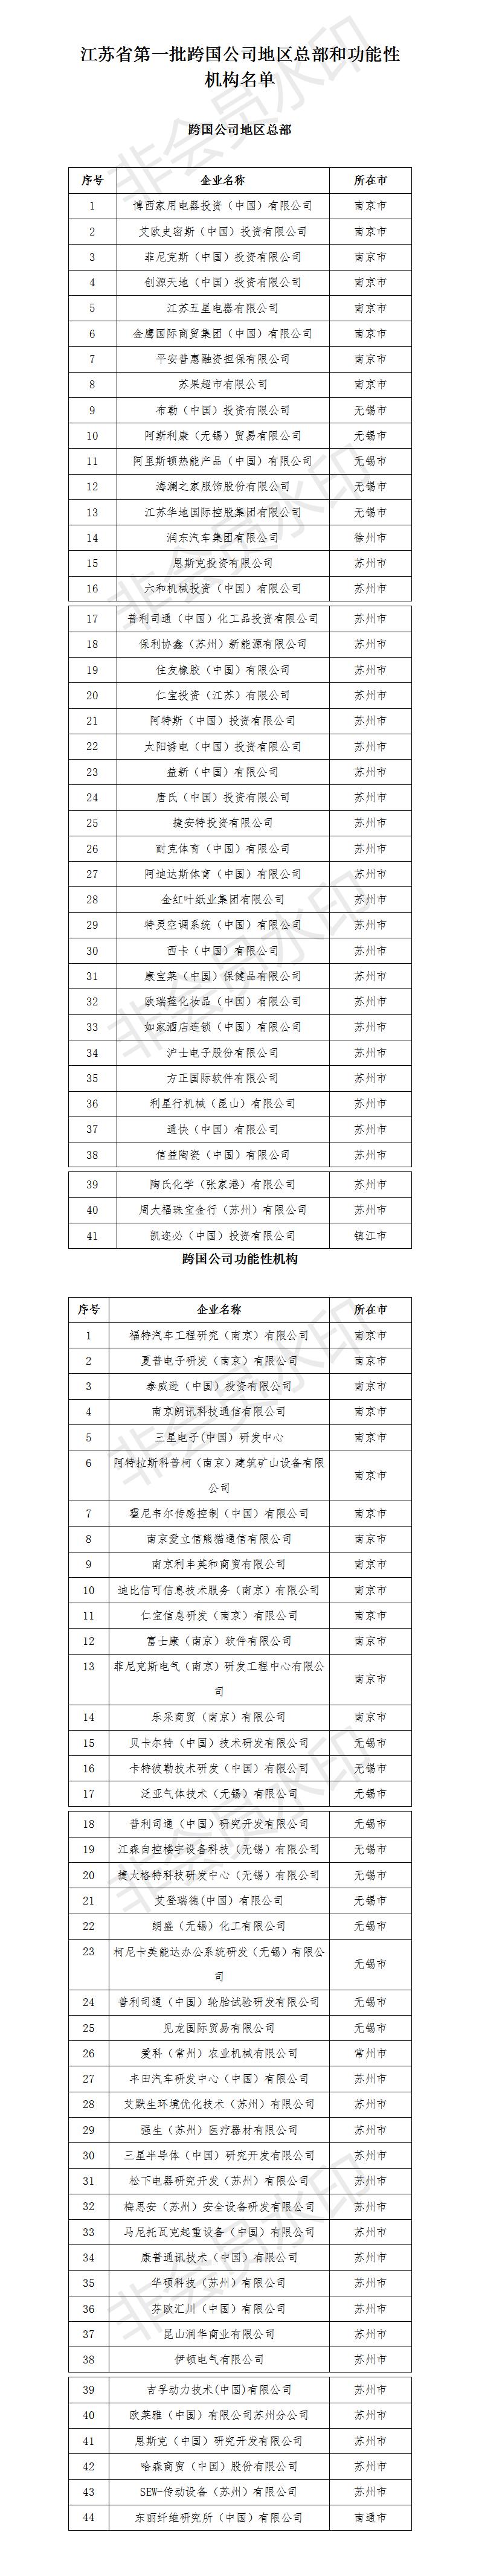 江苏省第一批跨国公司地区总部和功能性机构认定名单